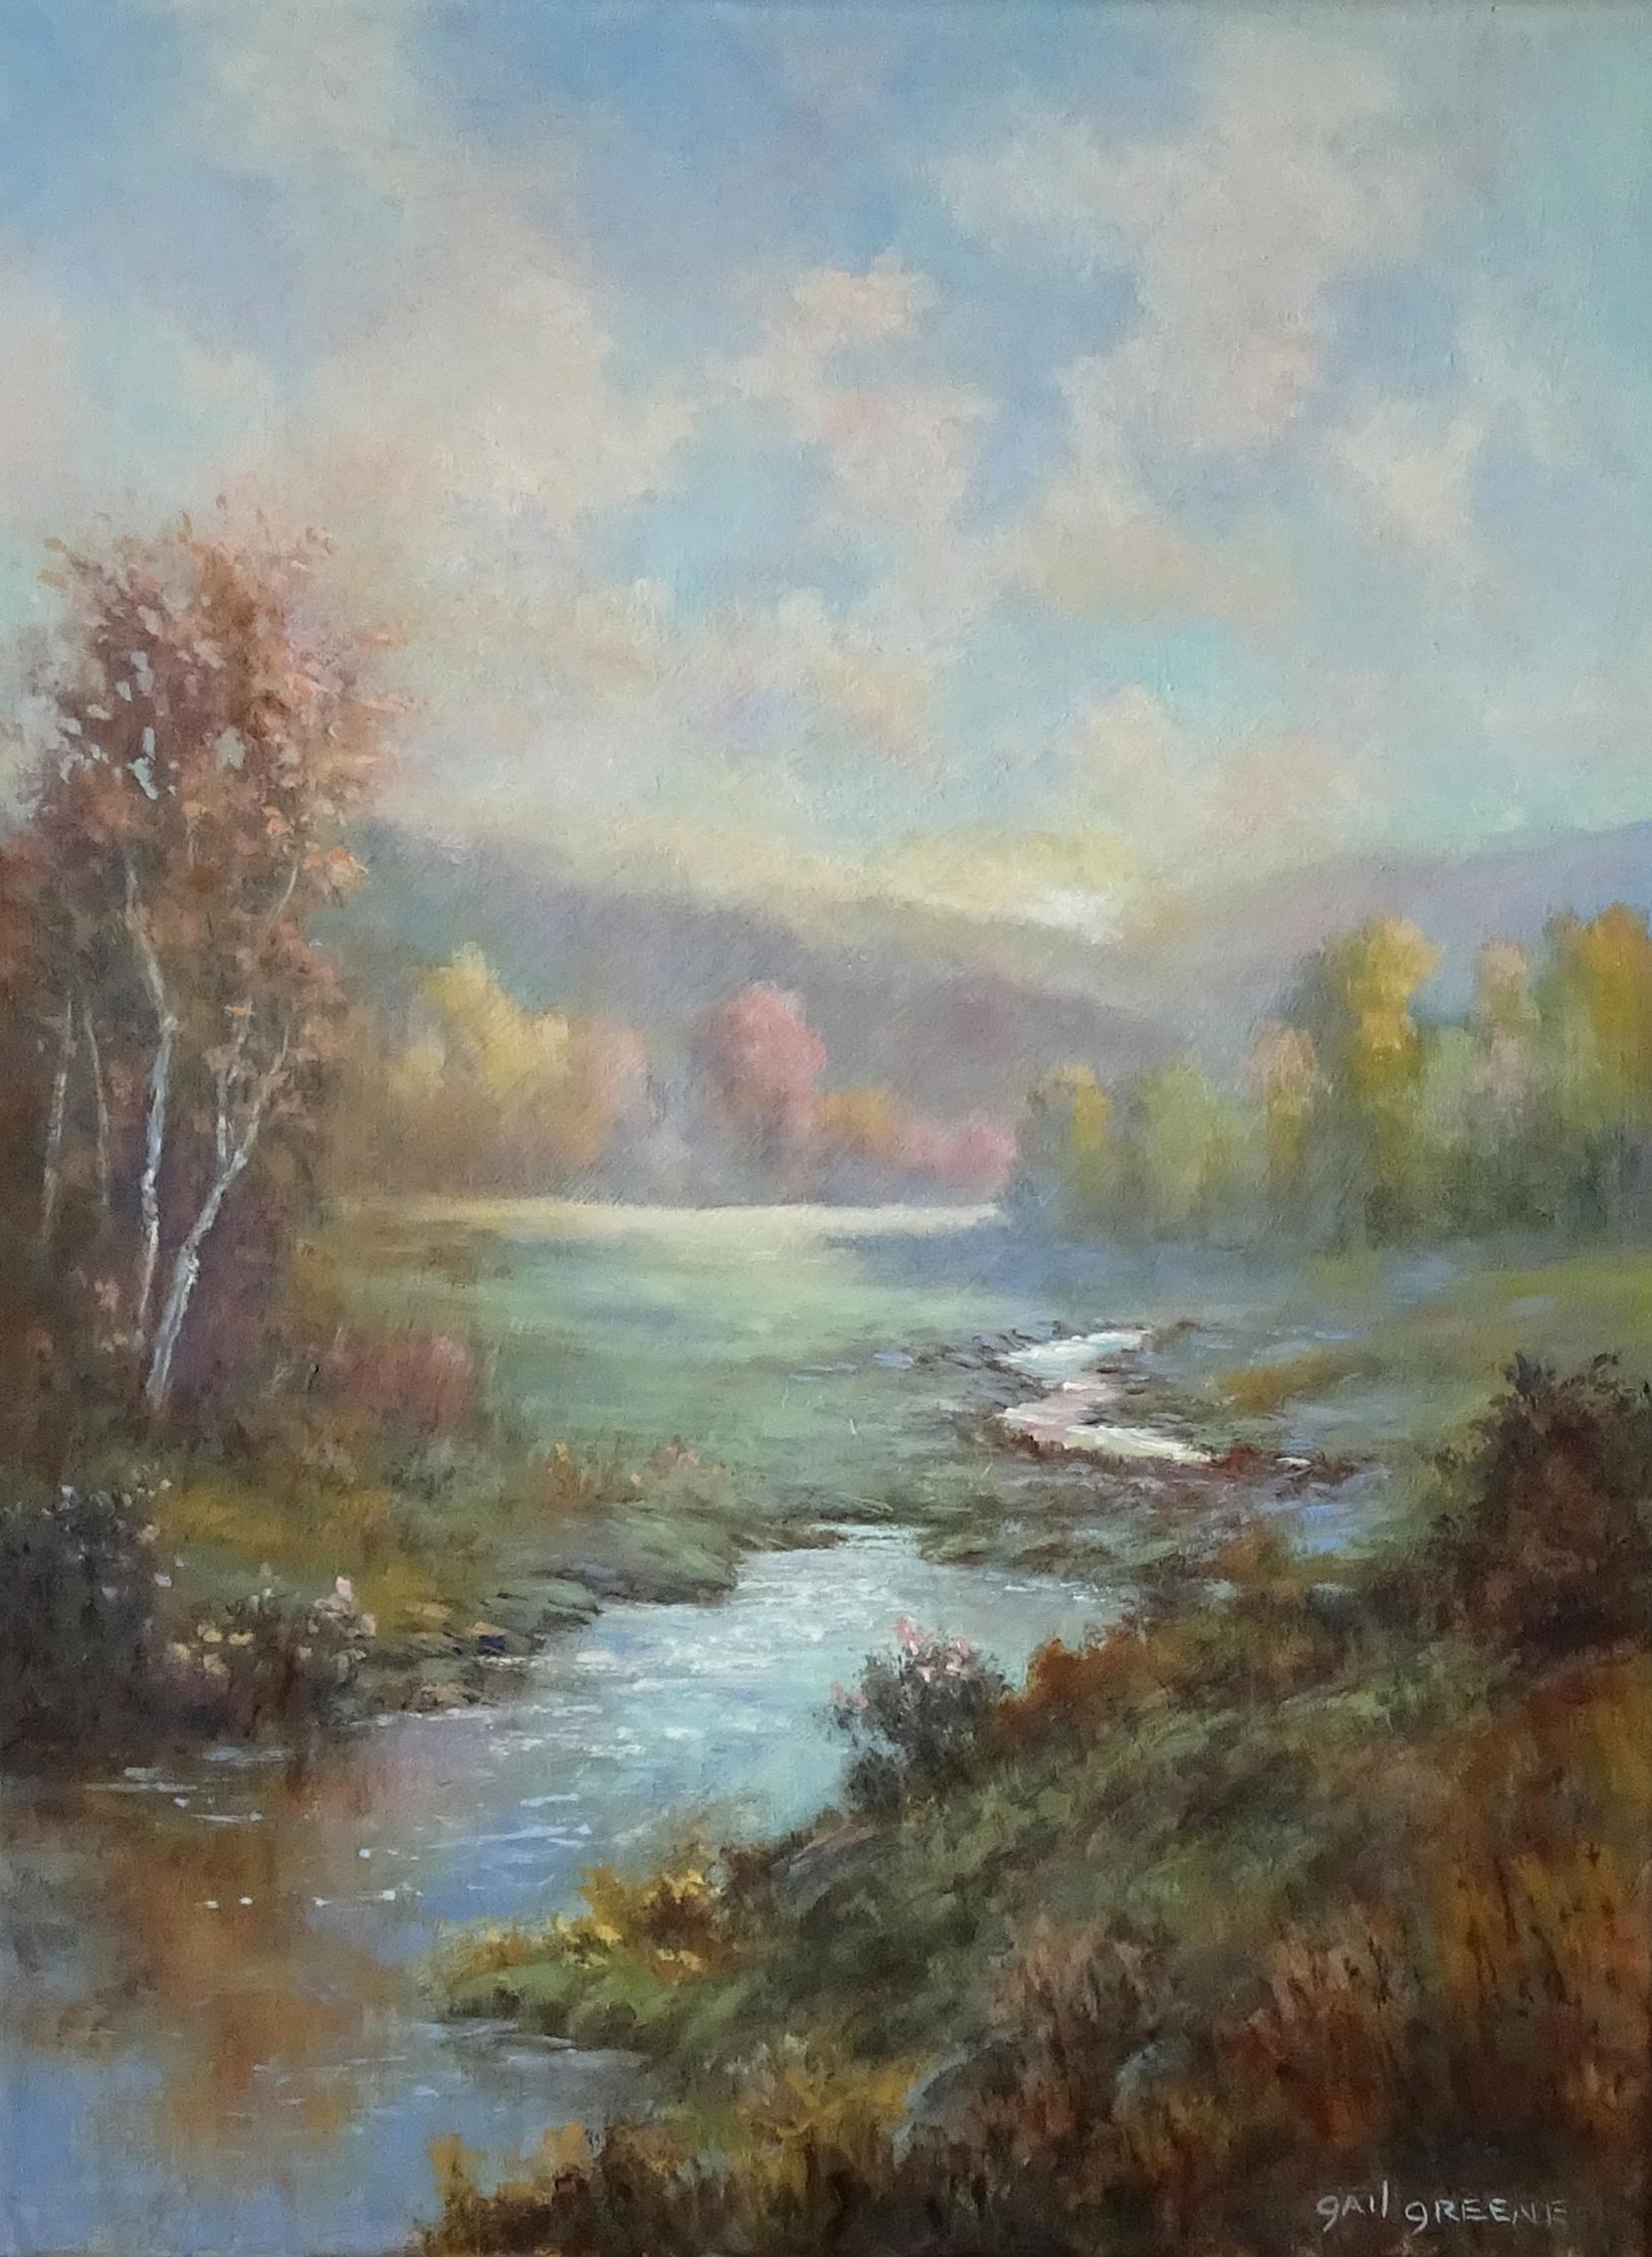 Landscape Painting Gail Greene - Un moment, peinture à l'huile